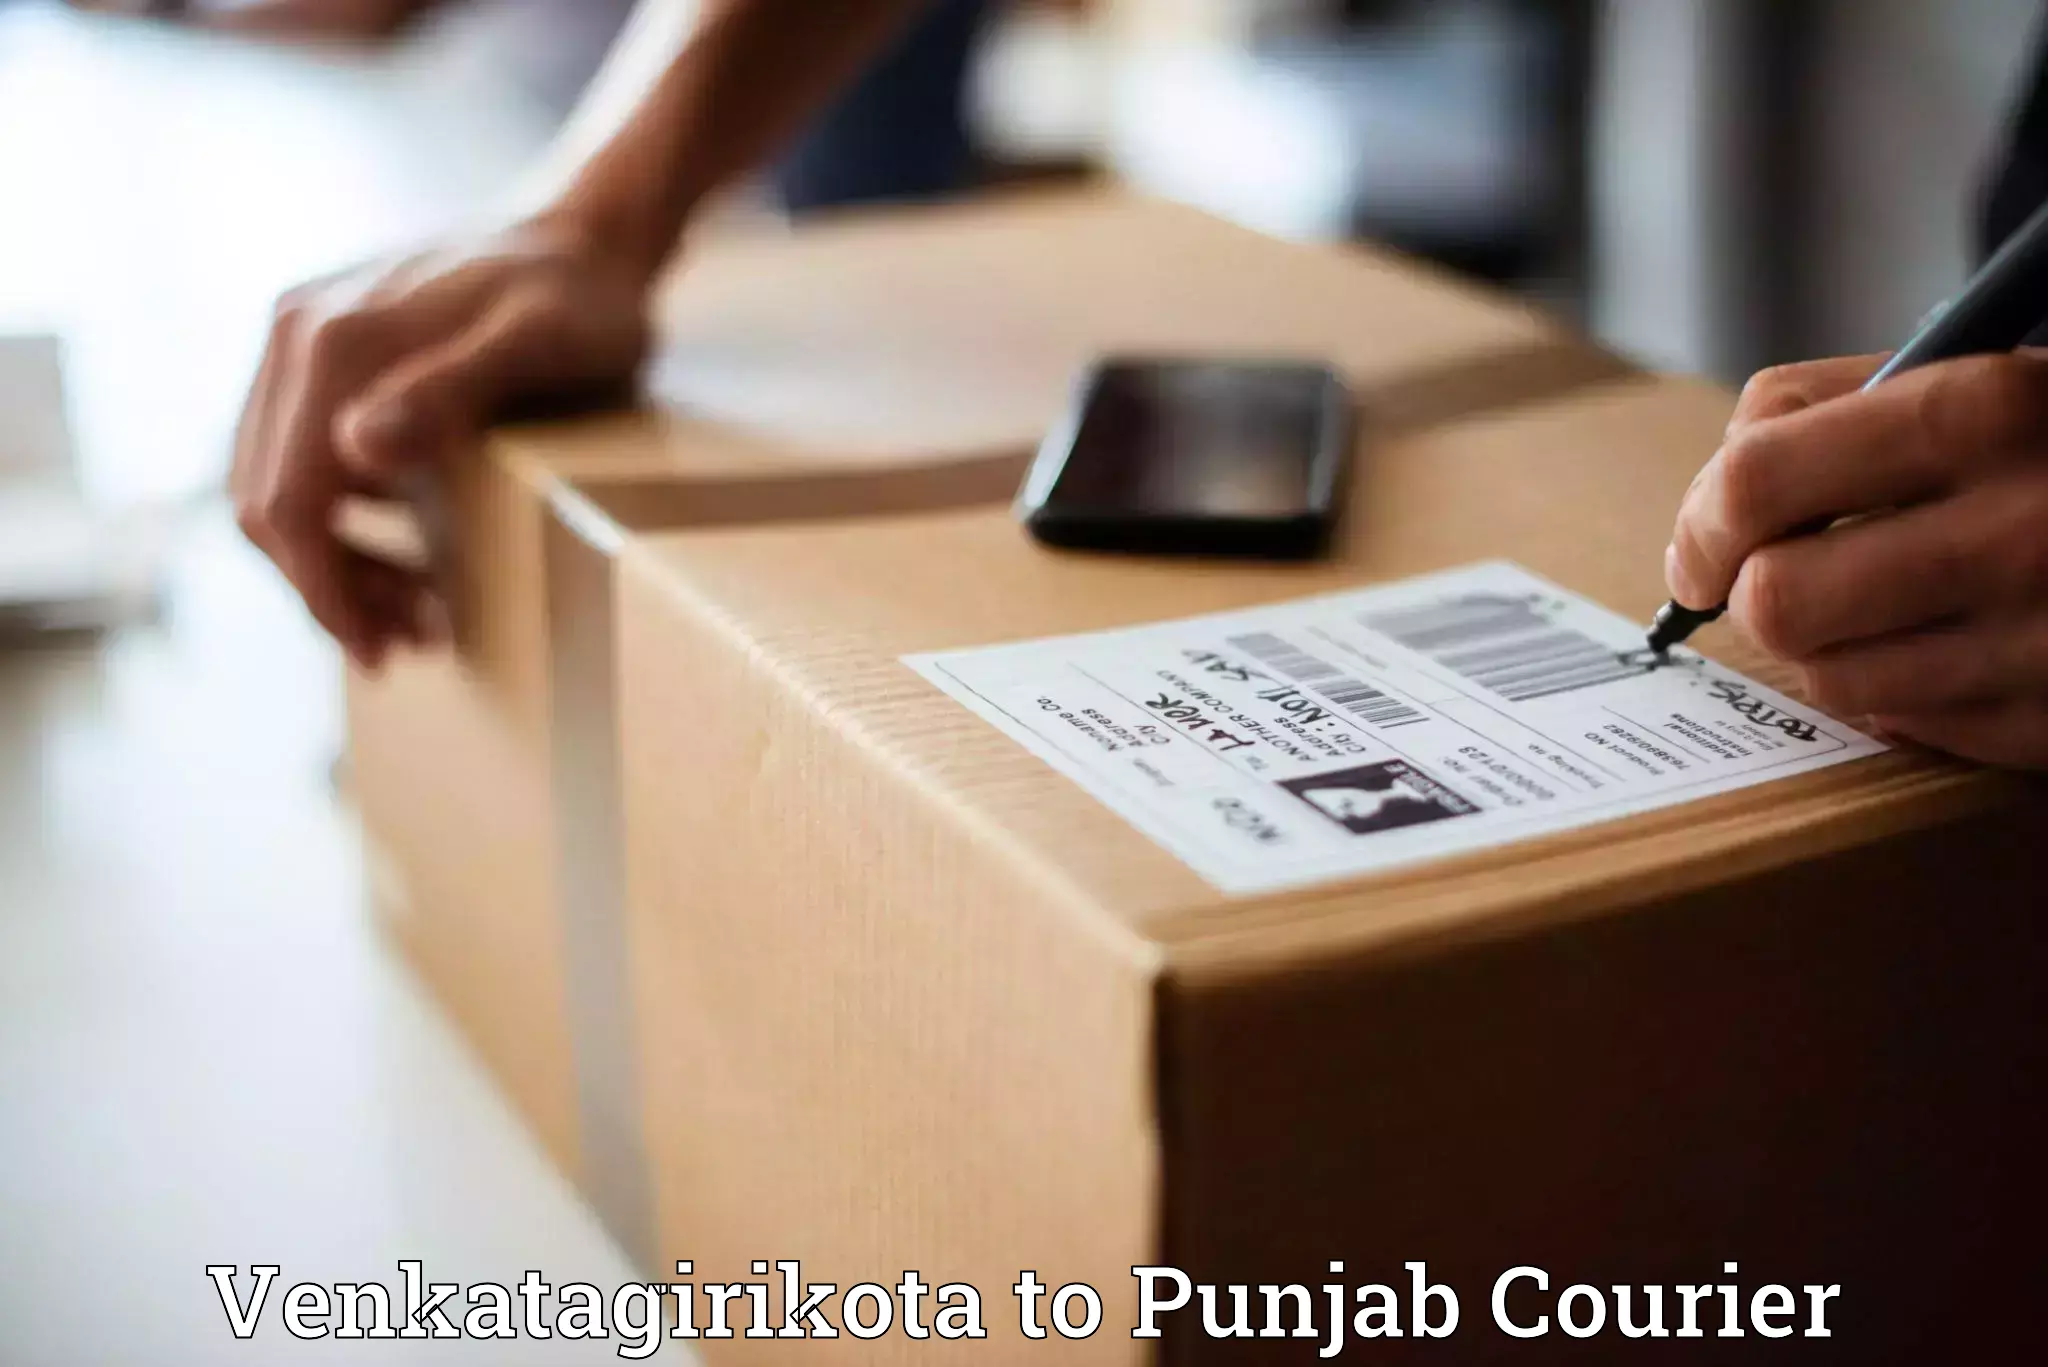 Efficient shipping platforms Venkatagirikota to Punjab